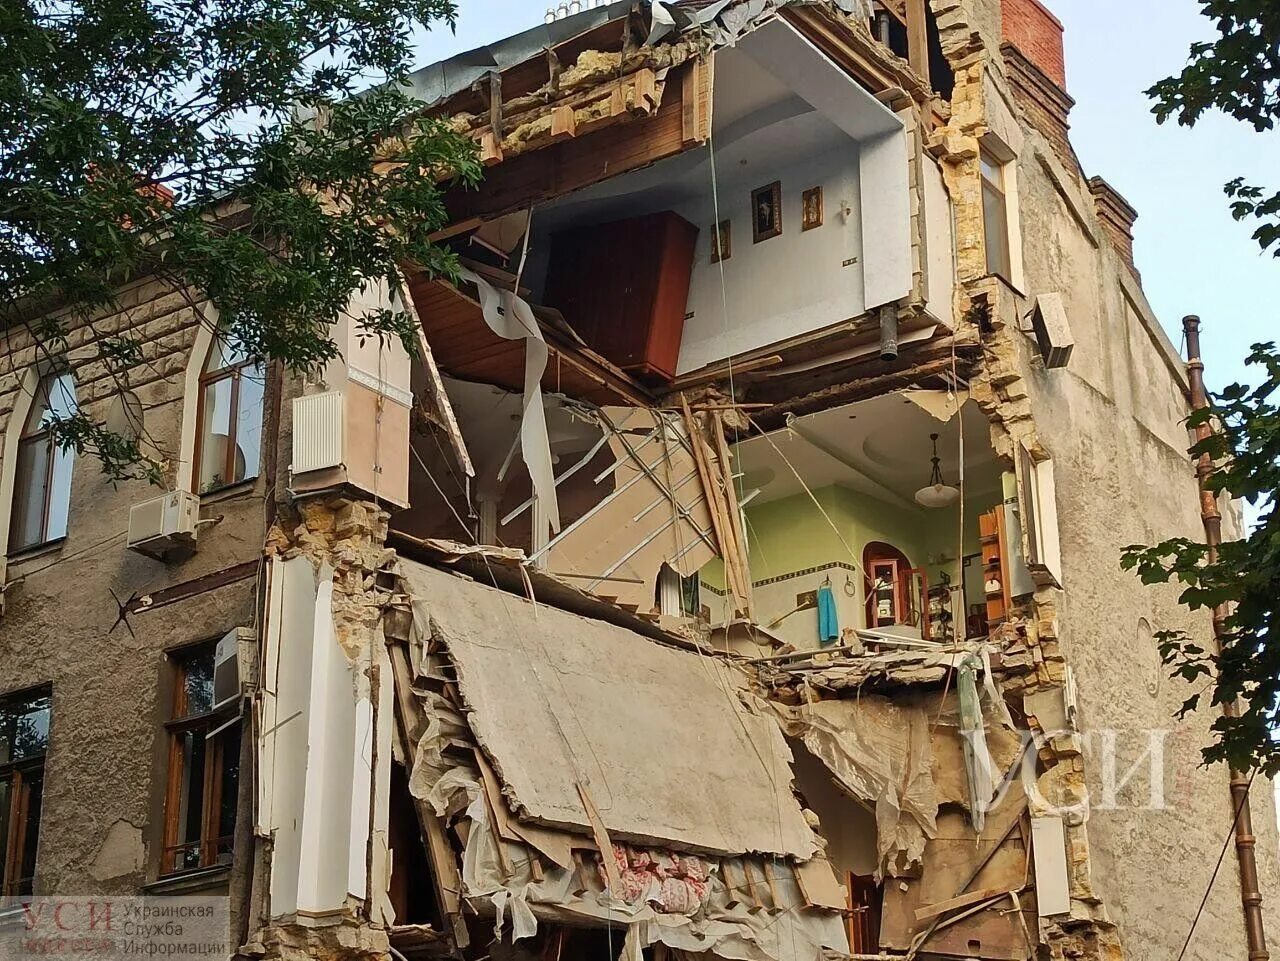 Разрушенные дома в Одессе. Обрушение зданий в Одессе. Разрушенное здание. Обрушение жилых домов. Разрушенный дом в одессе